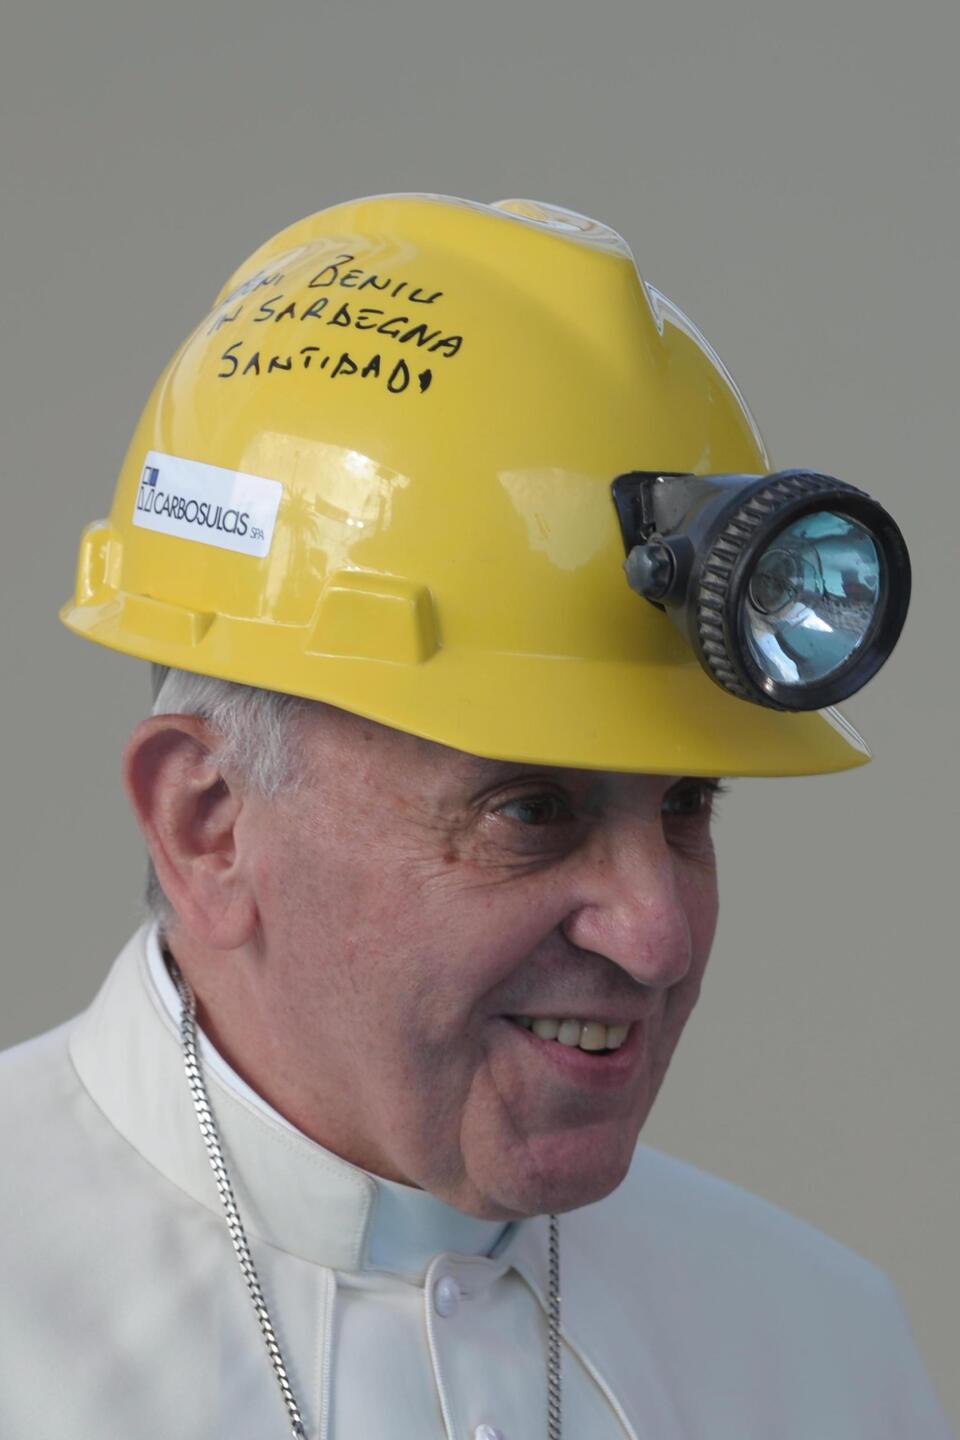 Papież Franciszek w górniczym kasku, Cagliari, stolica Sardynii, PAP/EPA